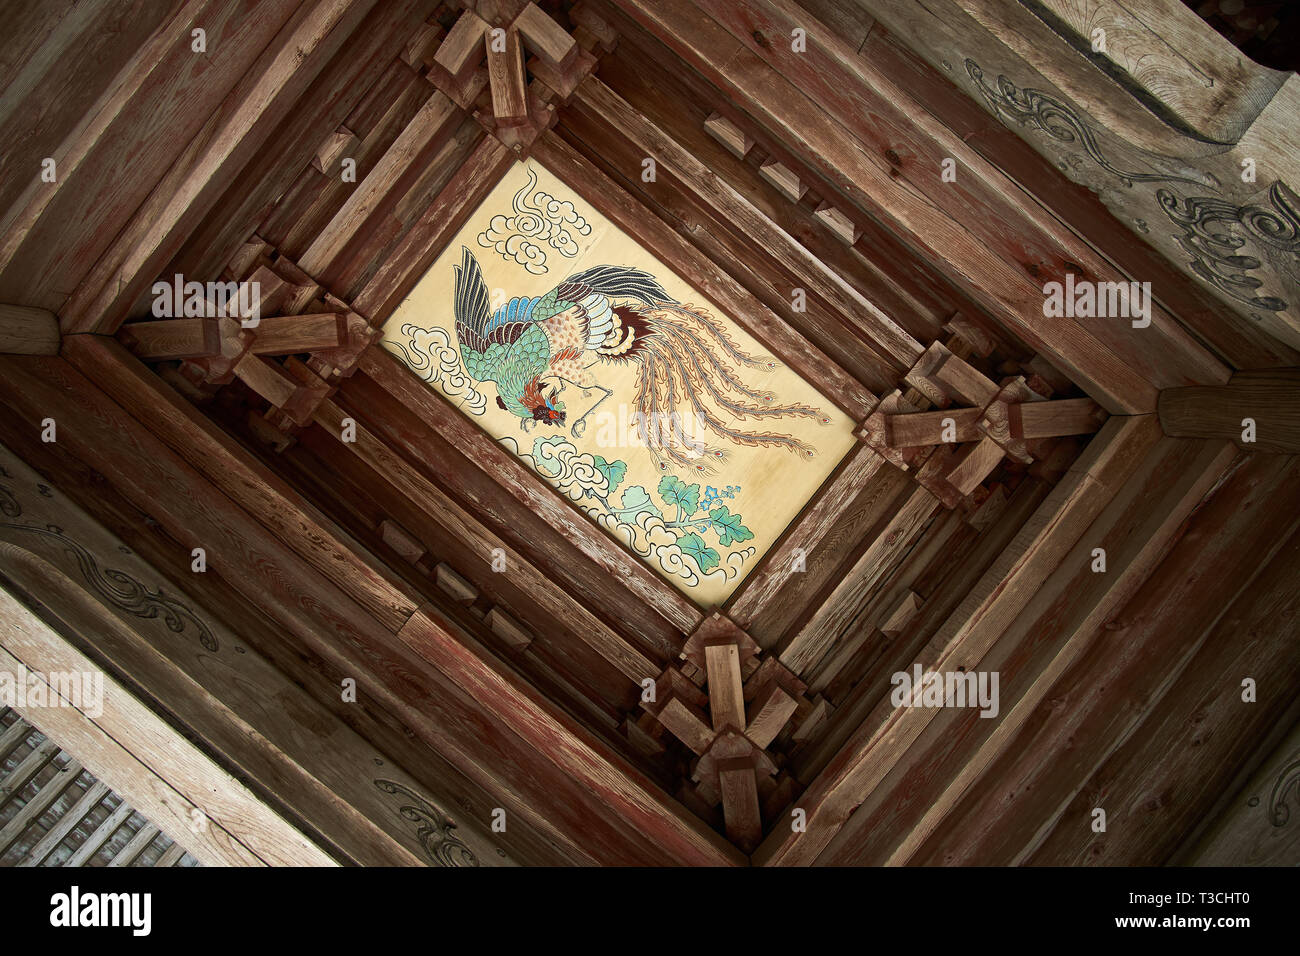 Fenghuang (Hōō en japonais) oiseau mythique de la peinture sur le plafond de la porte Sanmon (temple principal) de Tainei-ji à Minakami, Gunma, au Japon. Banque D'Images